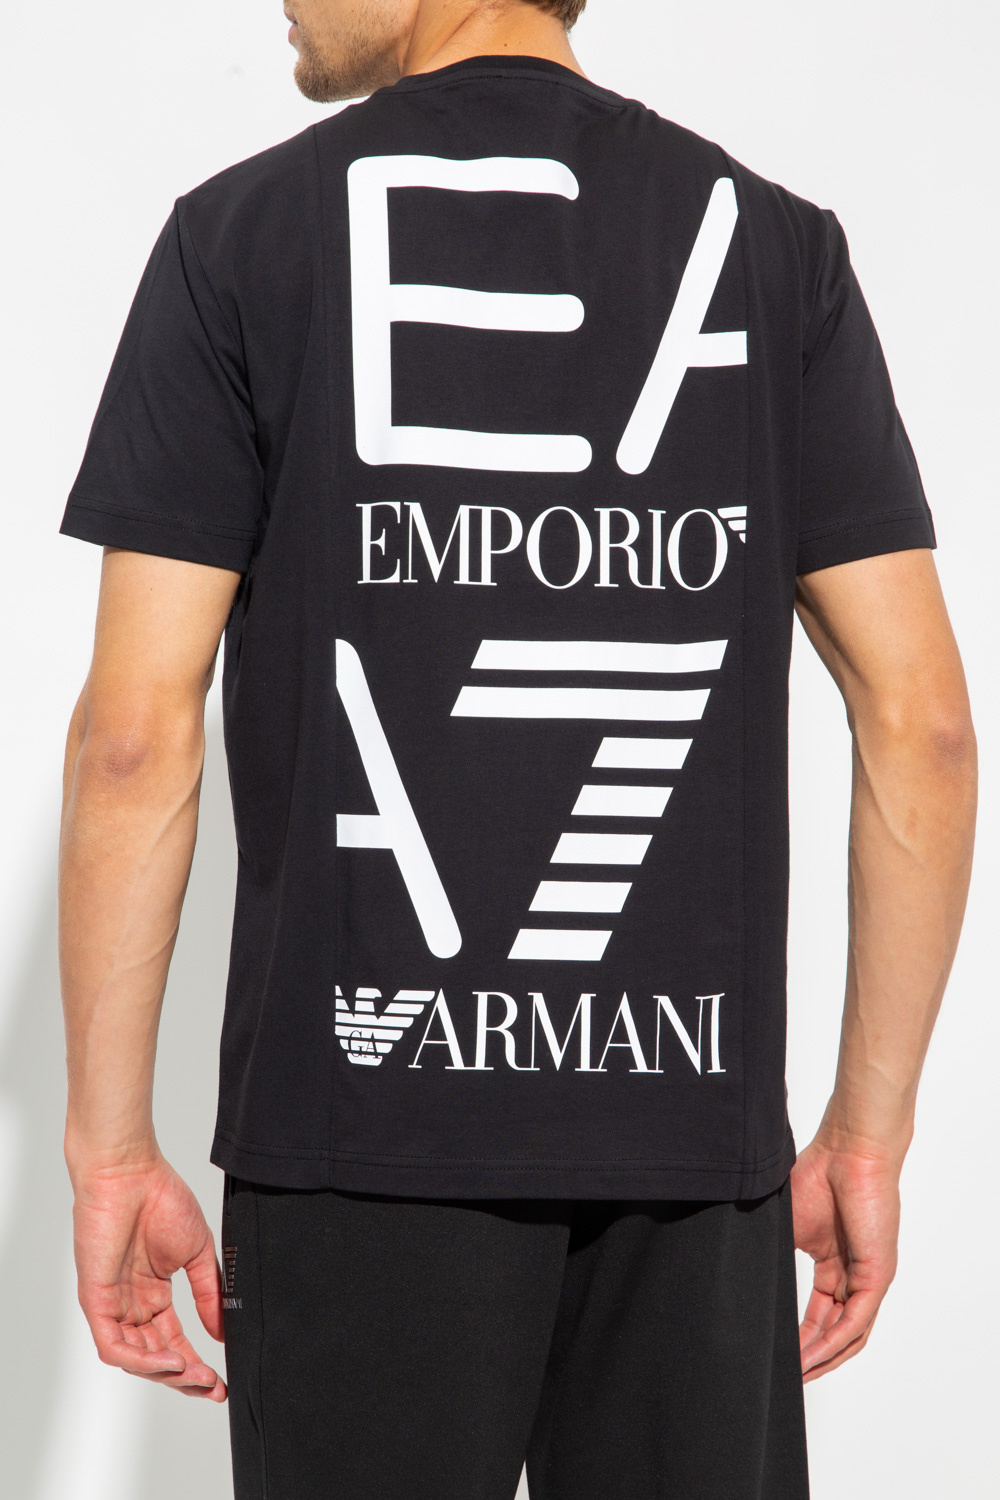 Emporio Armani BUSINESS FLAT MESSENGER BAG EMPORIO ARMANI TOP ZE WZOREM